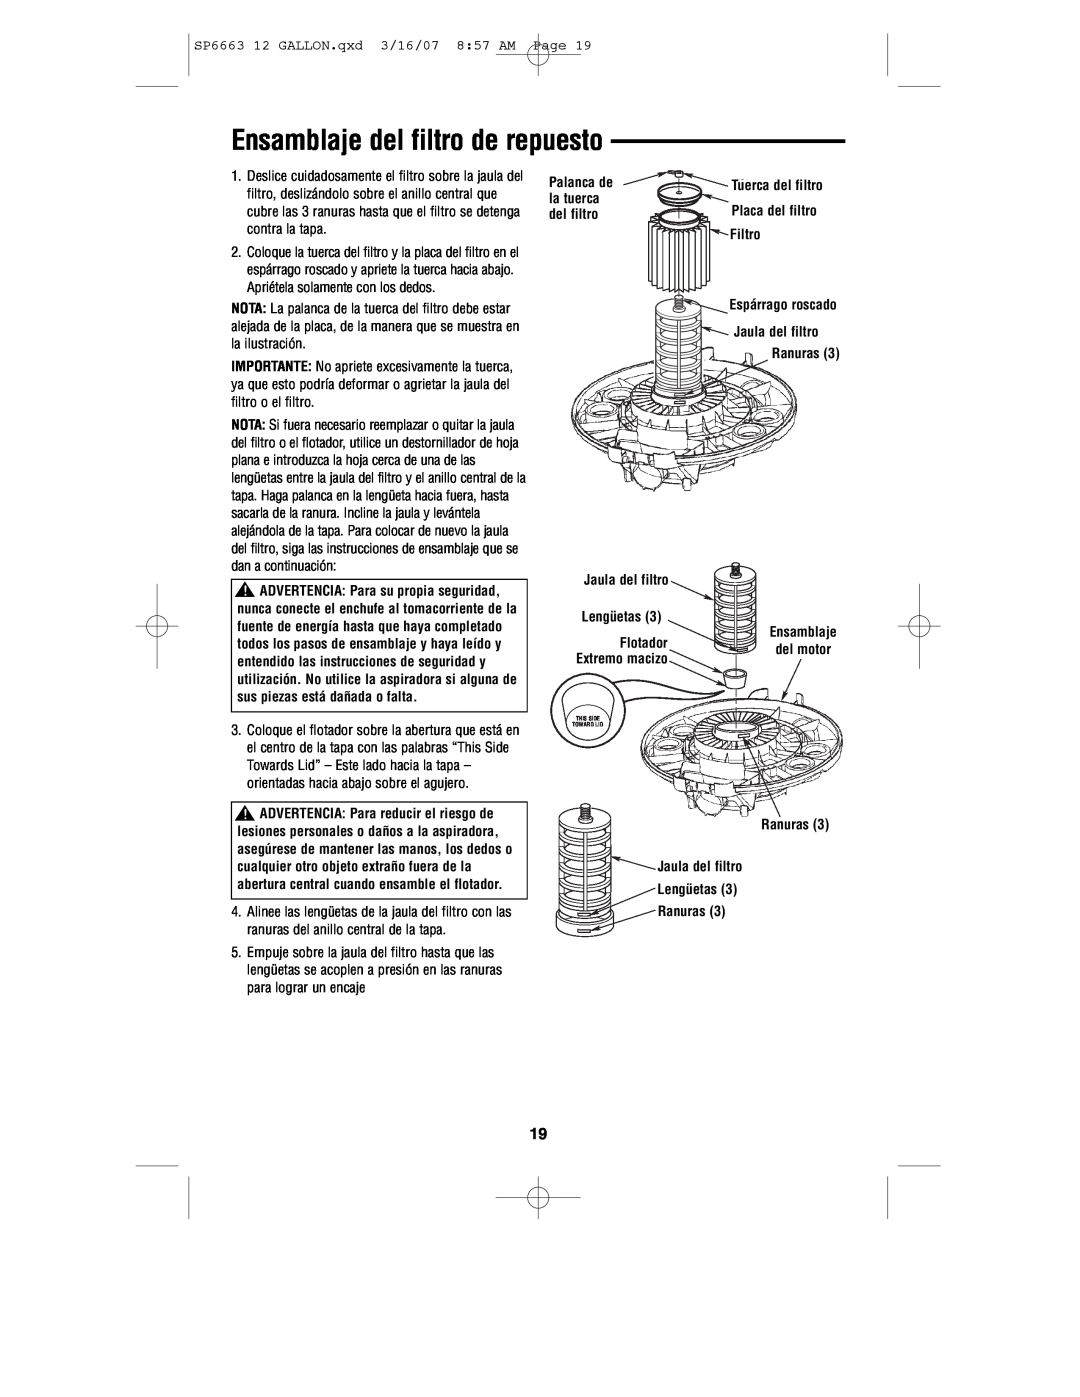 RIDGID WD1250 manual Ensamblaje del filtro de repuesto 